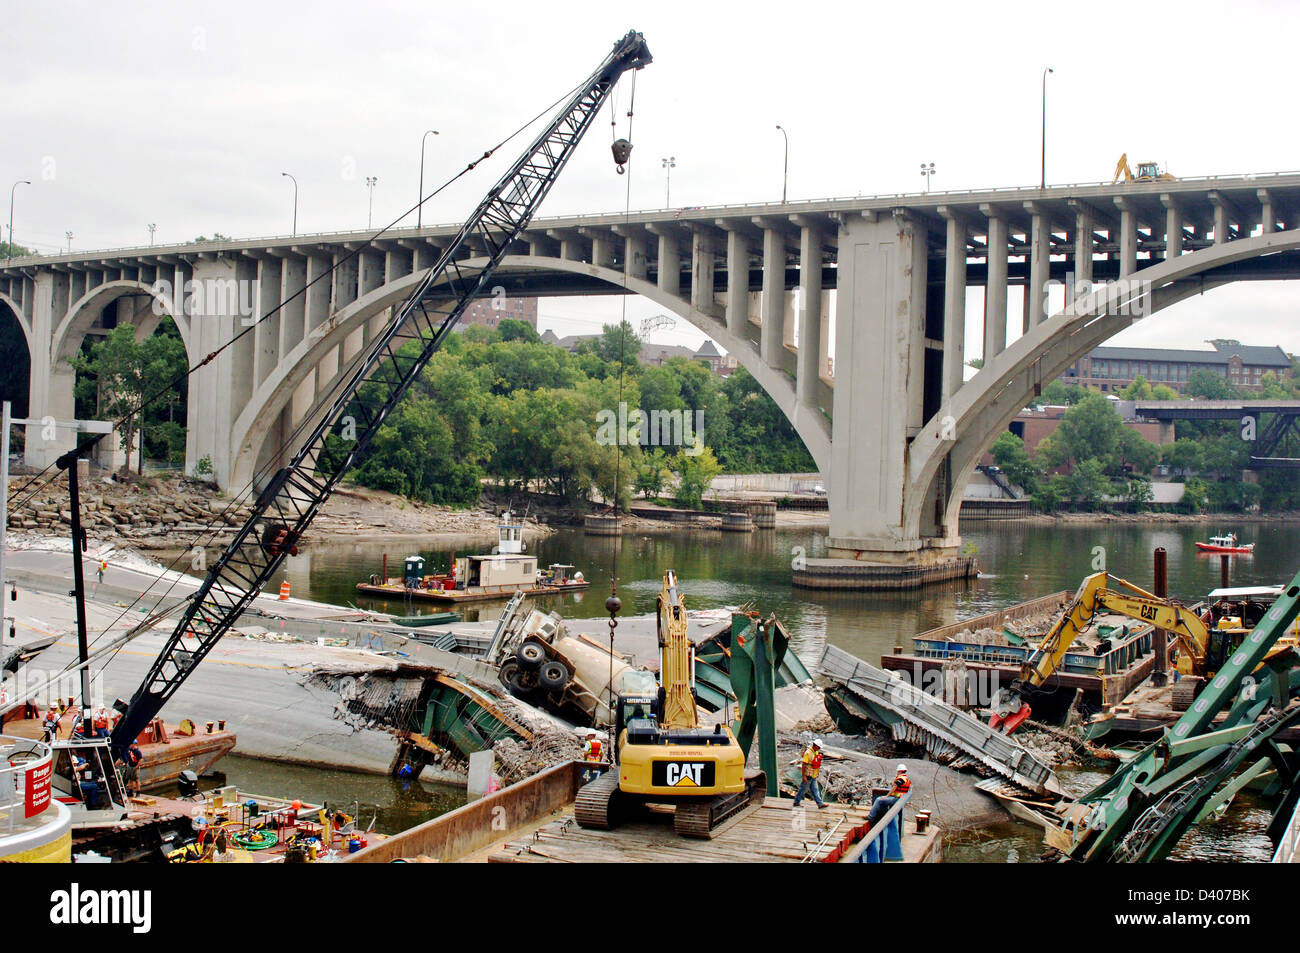 Blick auf die Reste der i-35 Brücke Zusammenbruch und Recovery Bemühungen 16. August 2007 in Minneapolis, MN. Die Brücke stürzte plötzlich während der Feierabendverkehr auf 1. August 2007 13 Menschen getötet und 145 verletzt. Stockfoto